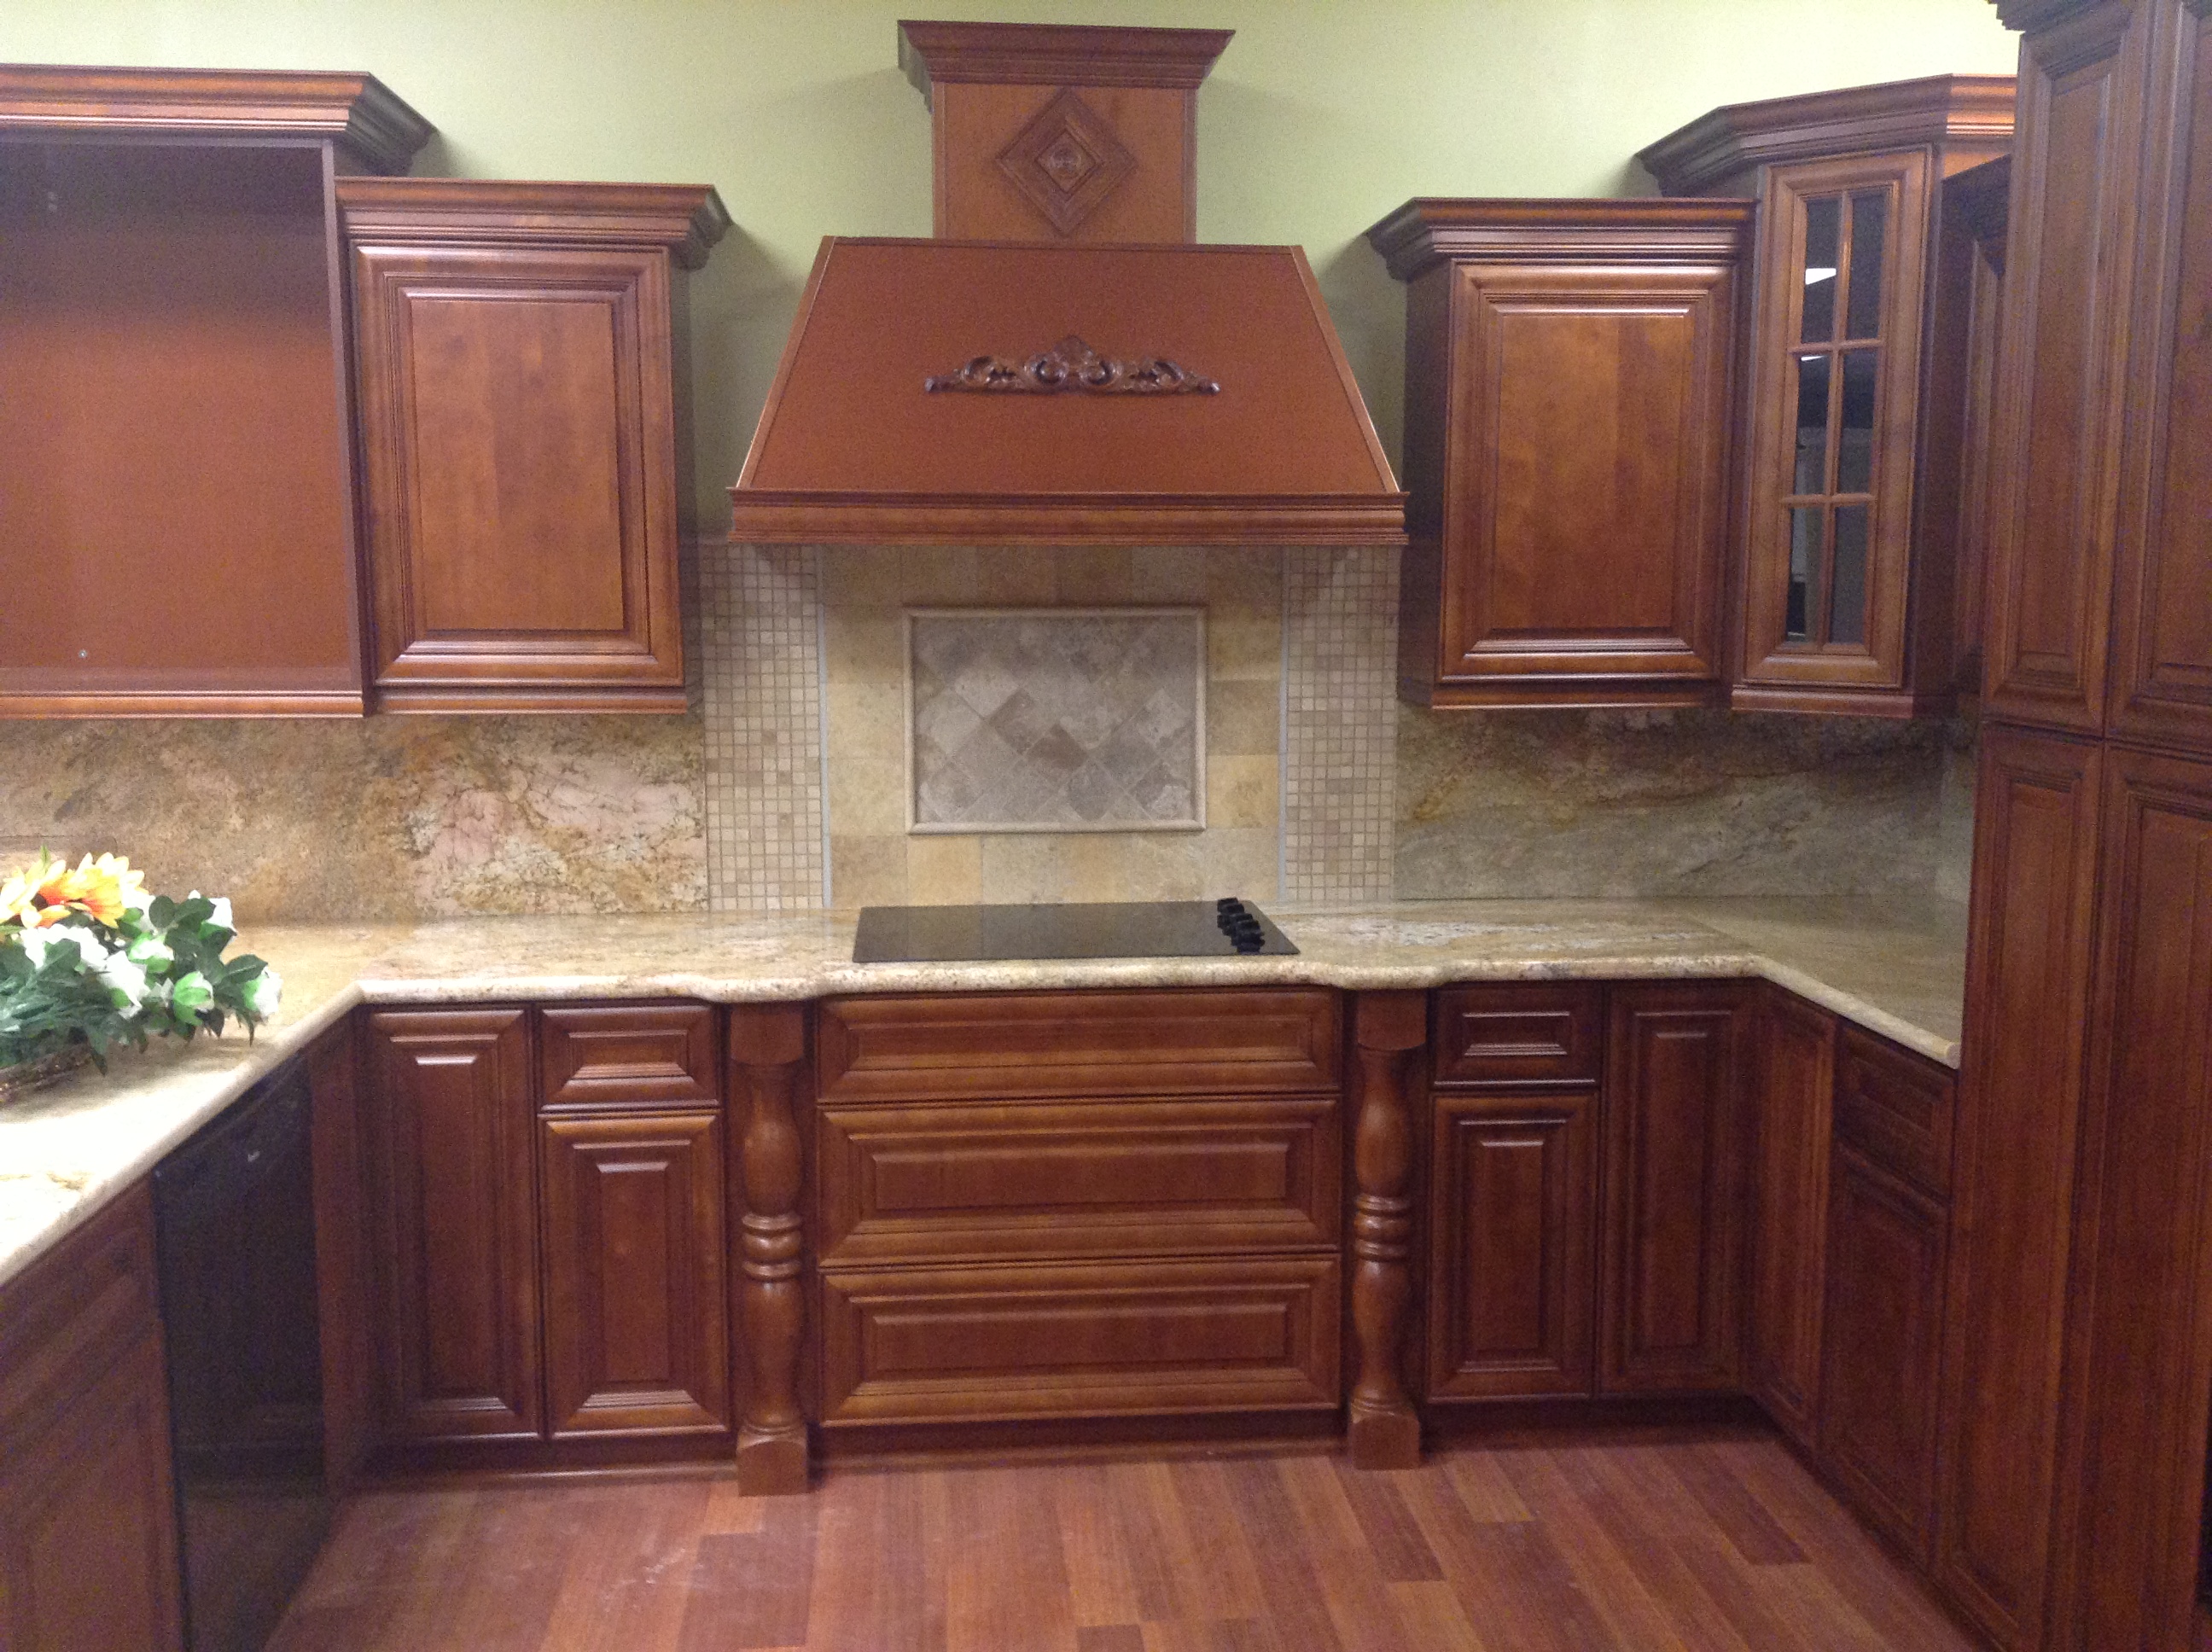 Gallery Kitchen Cabinets And Granite Countertops Pompano Beach Fl